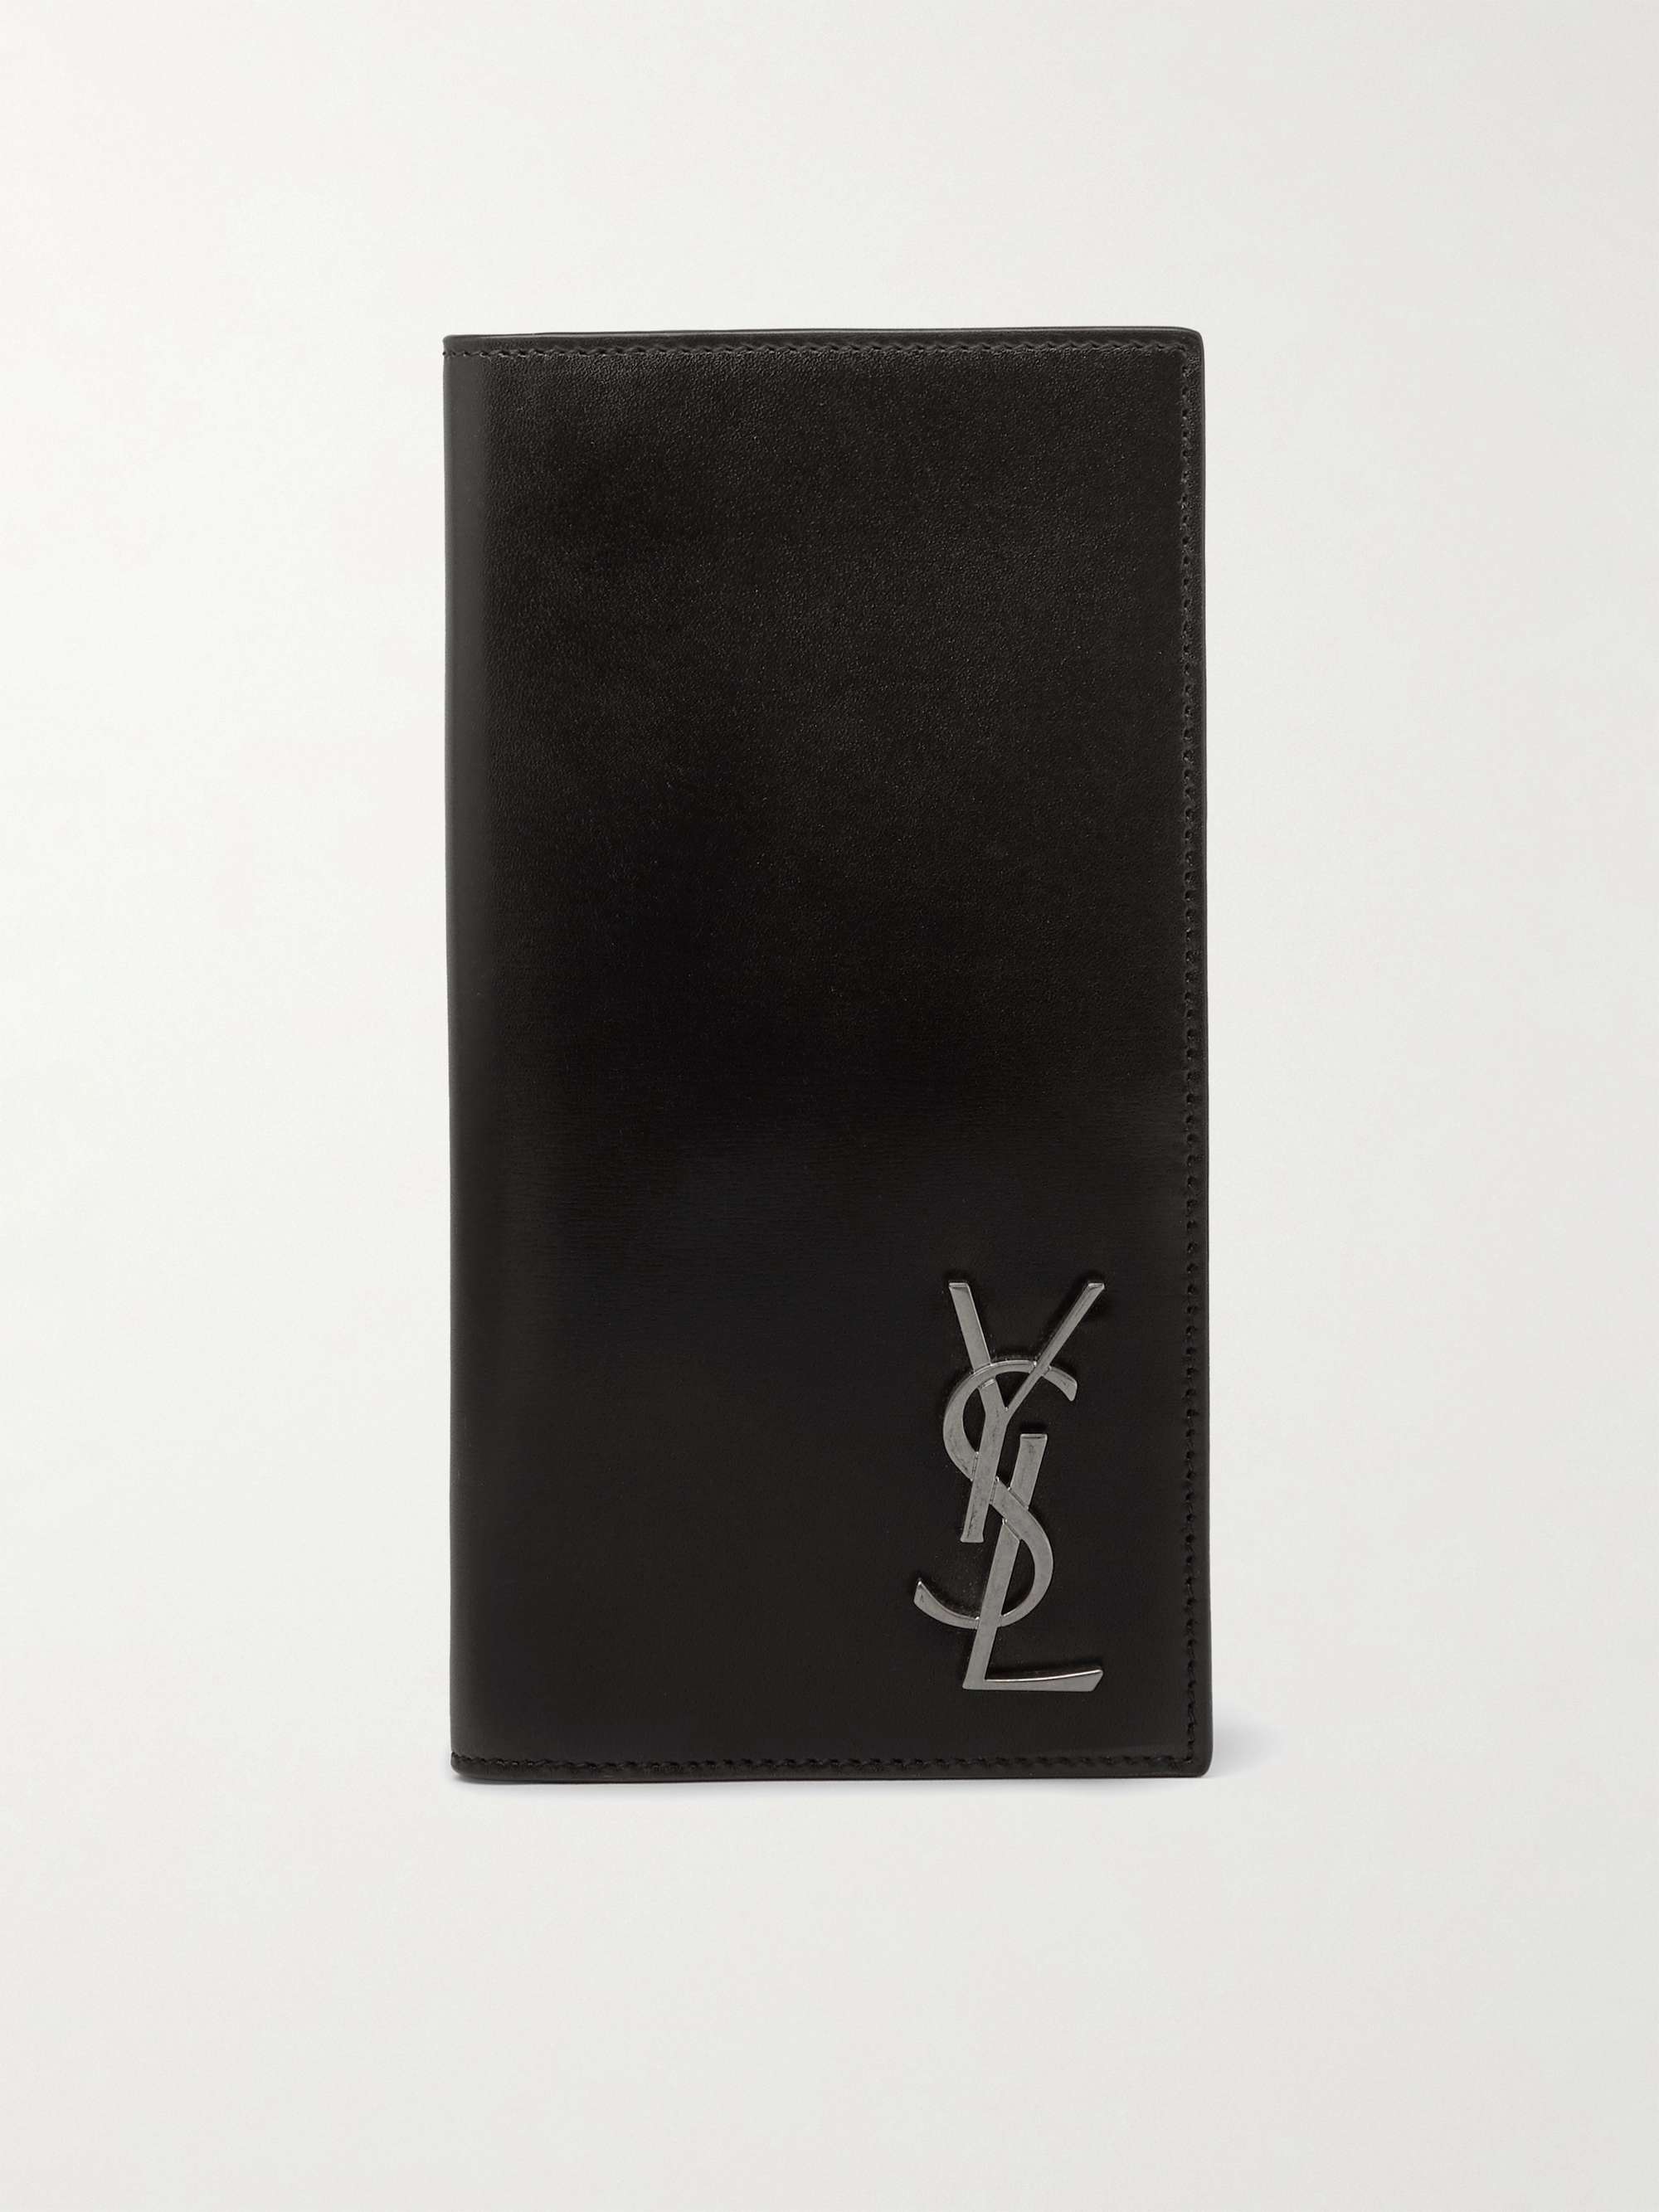 YSL Yves Saint Laurent Wallets for Men